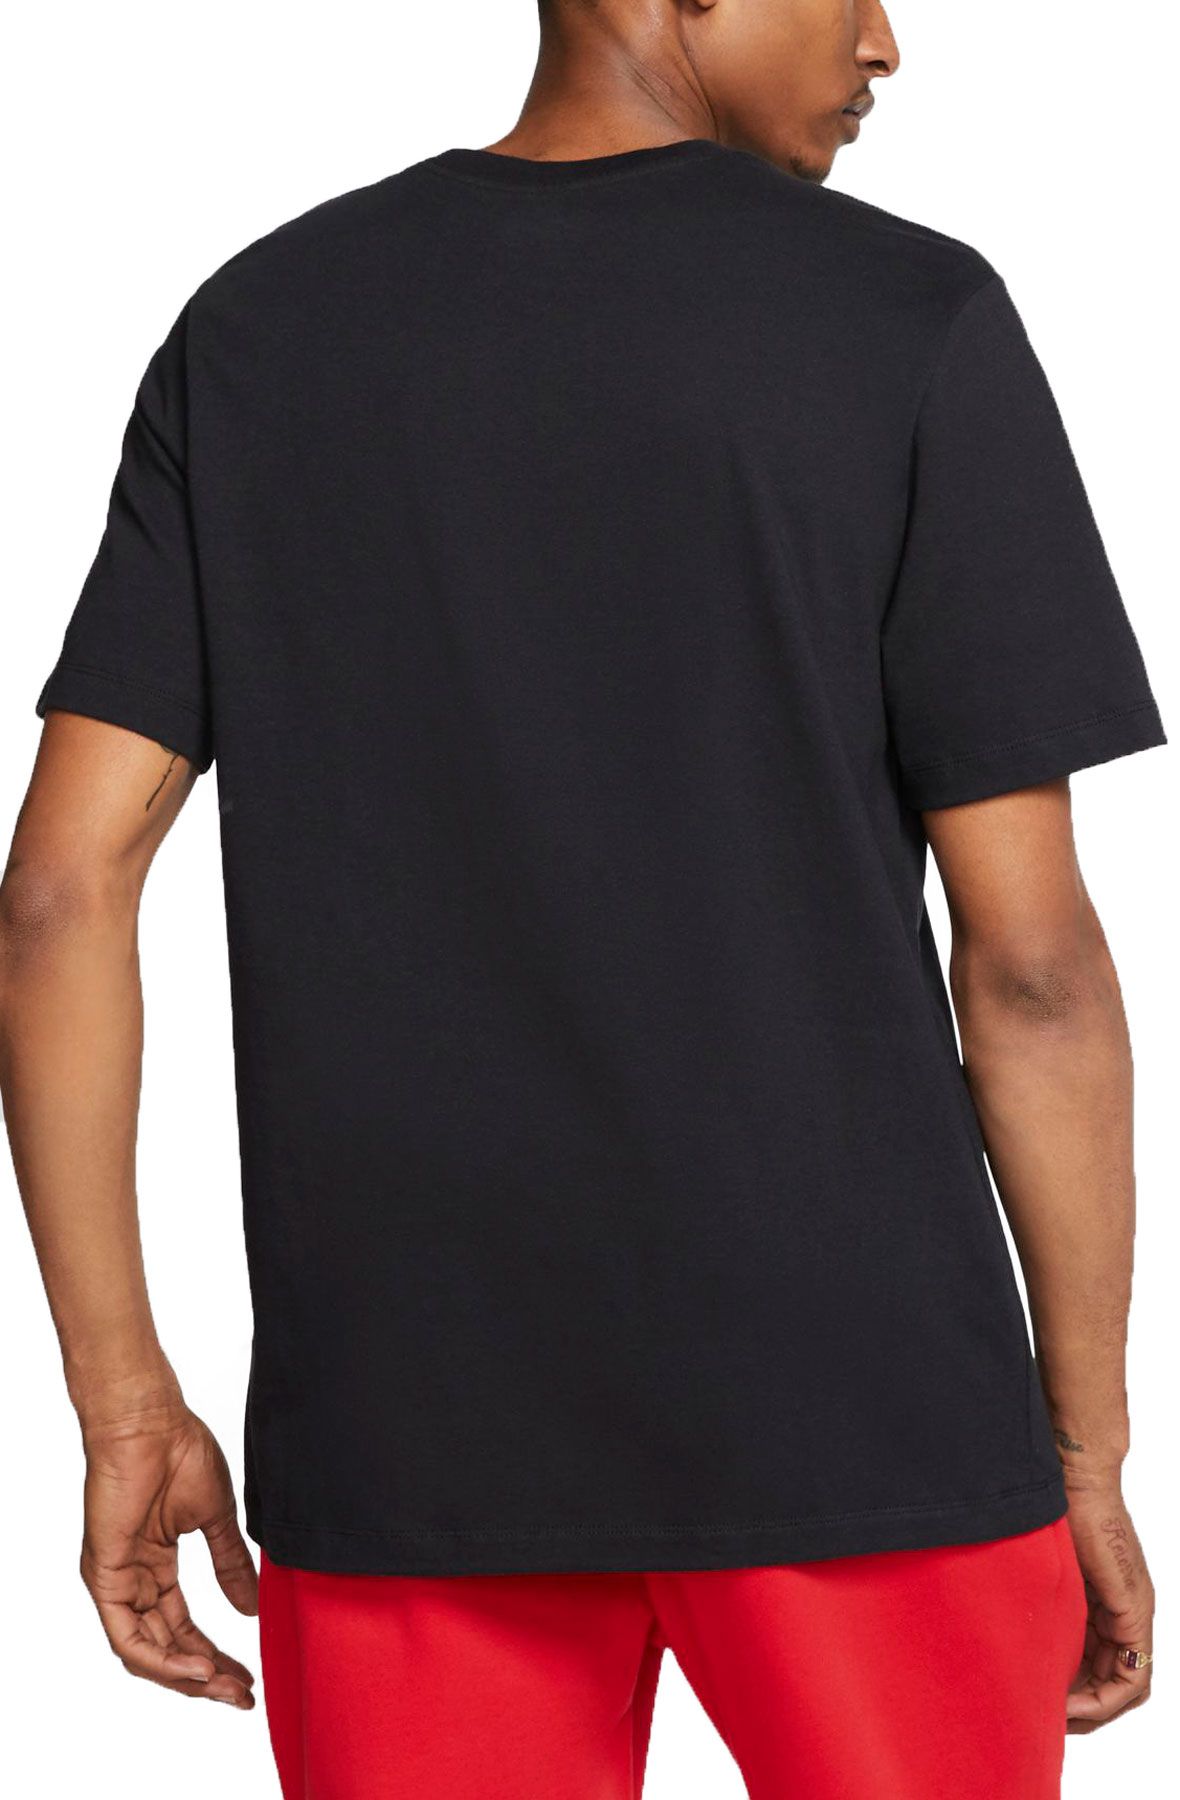 NIKE Sportswear Hike T-Shirt CW2305 010 - Shiekh